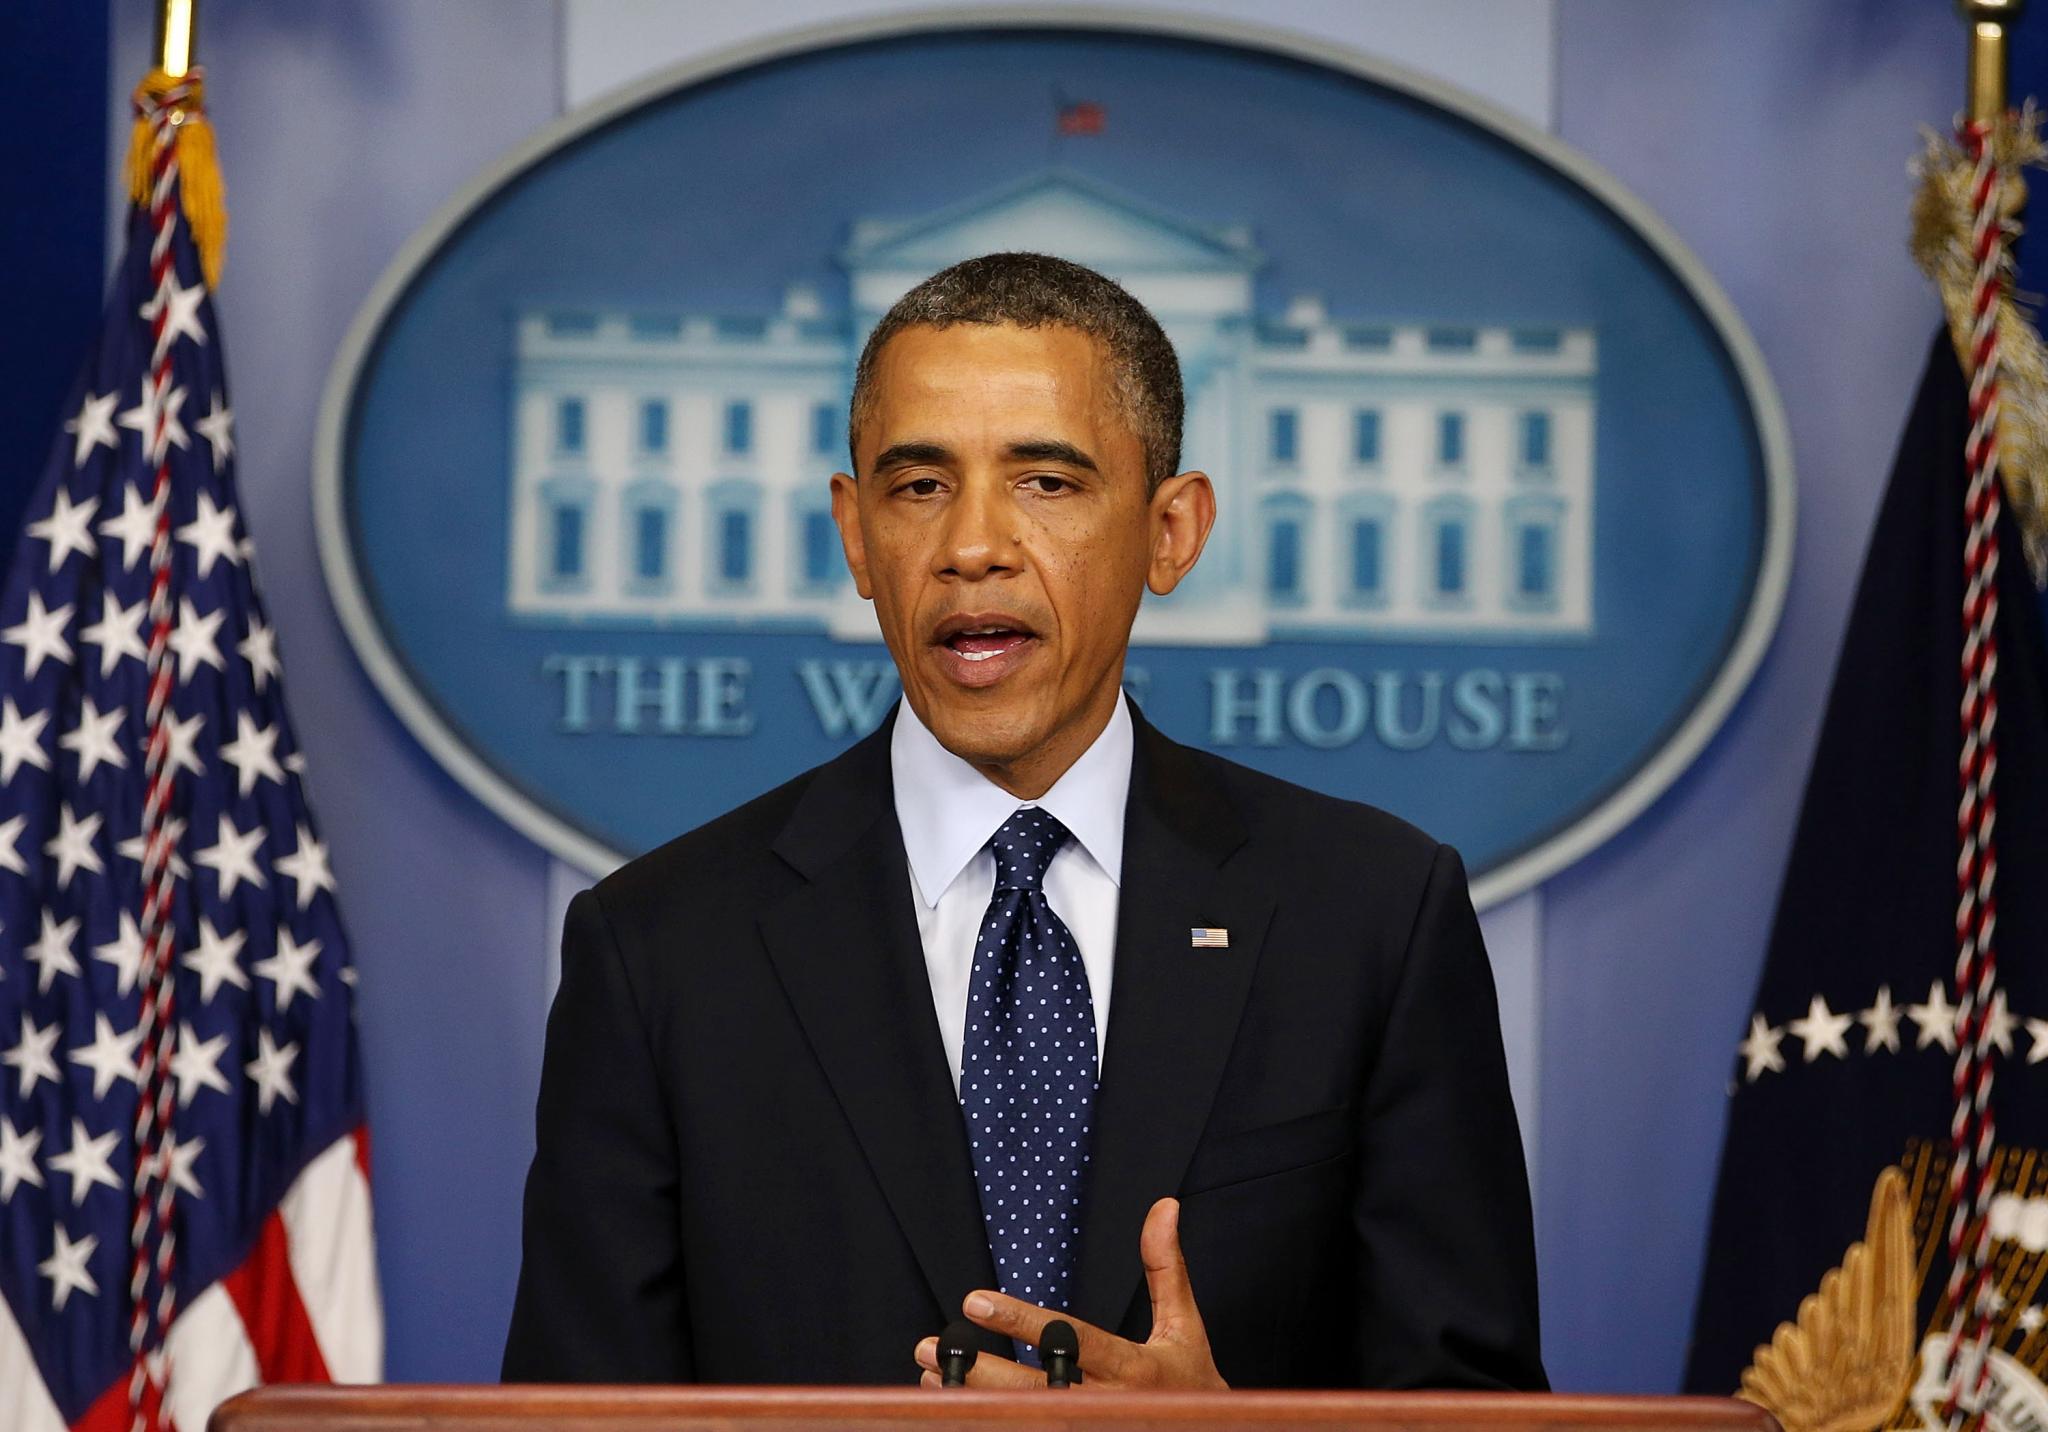 President Obama Responds to Boston Bombs
